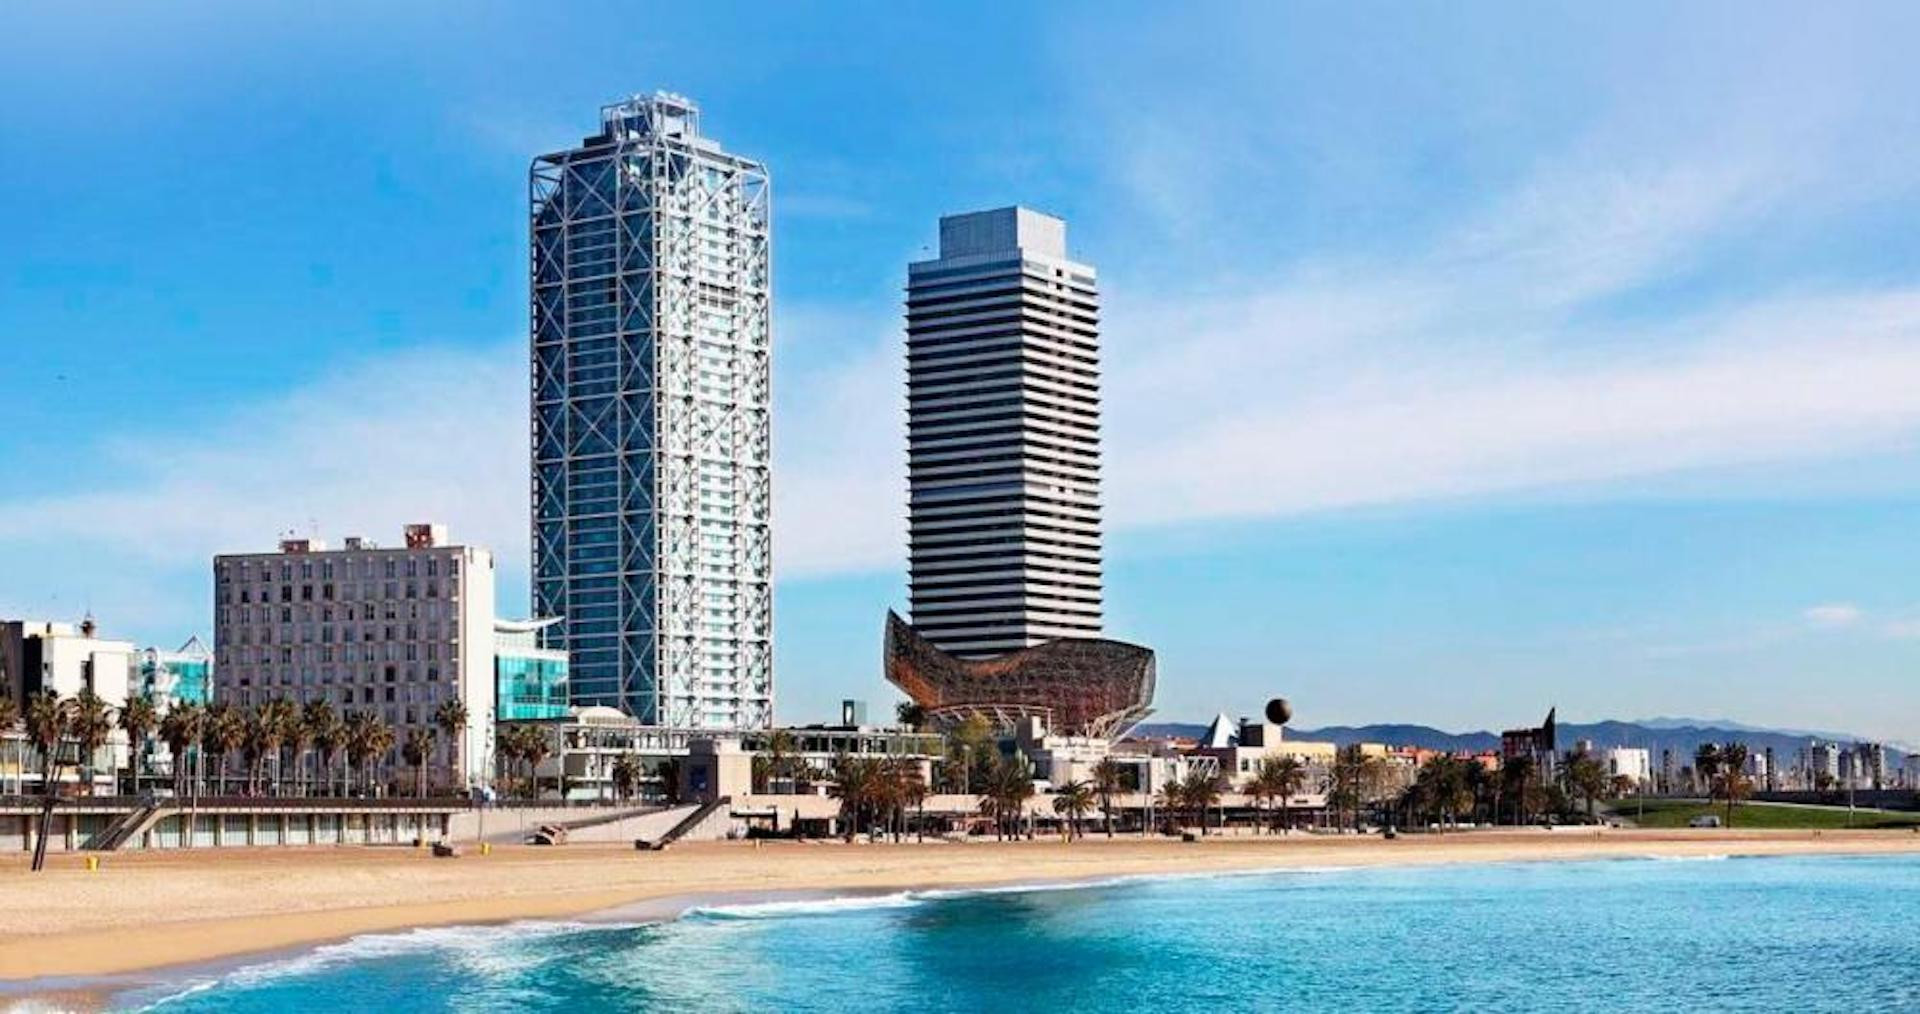 El frente marítimo de Barcelona con el Hotel Arts y la Torre Mapfre en primer término / CG